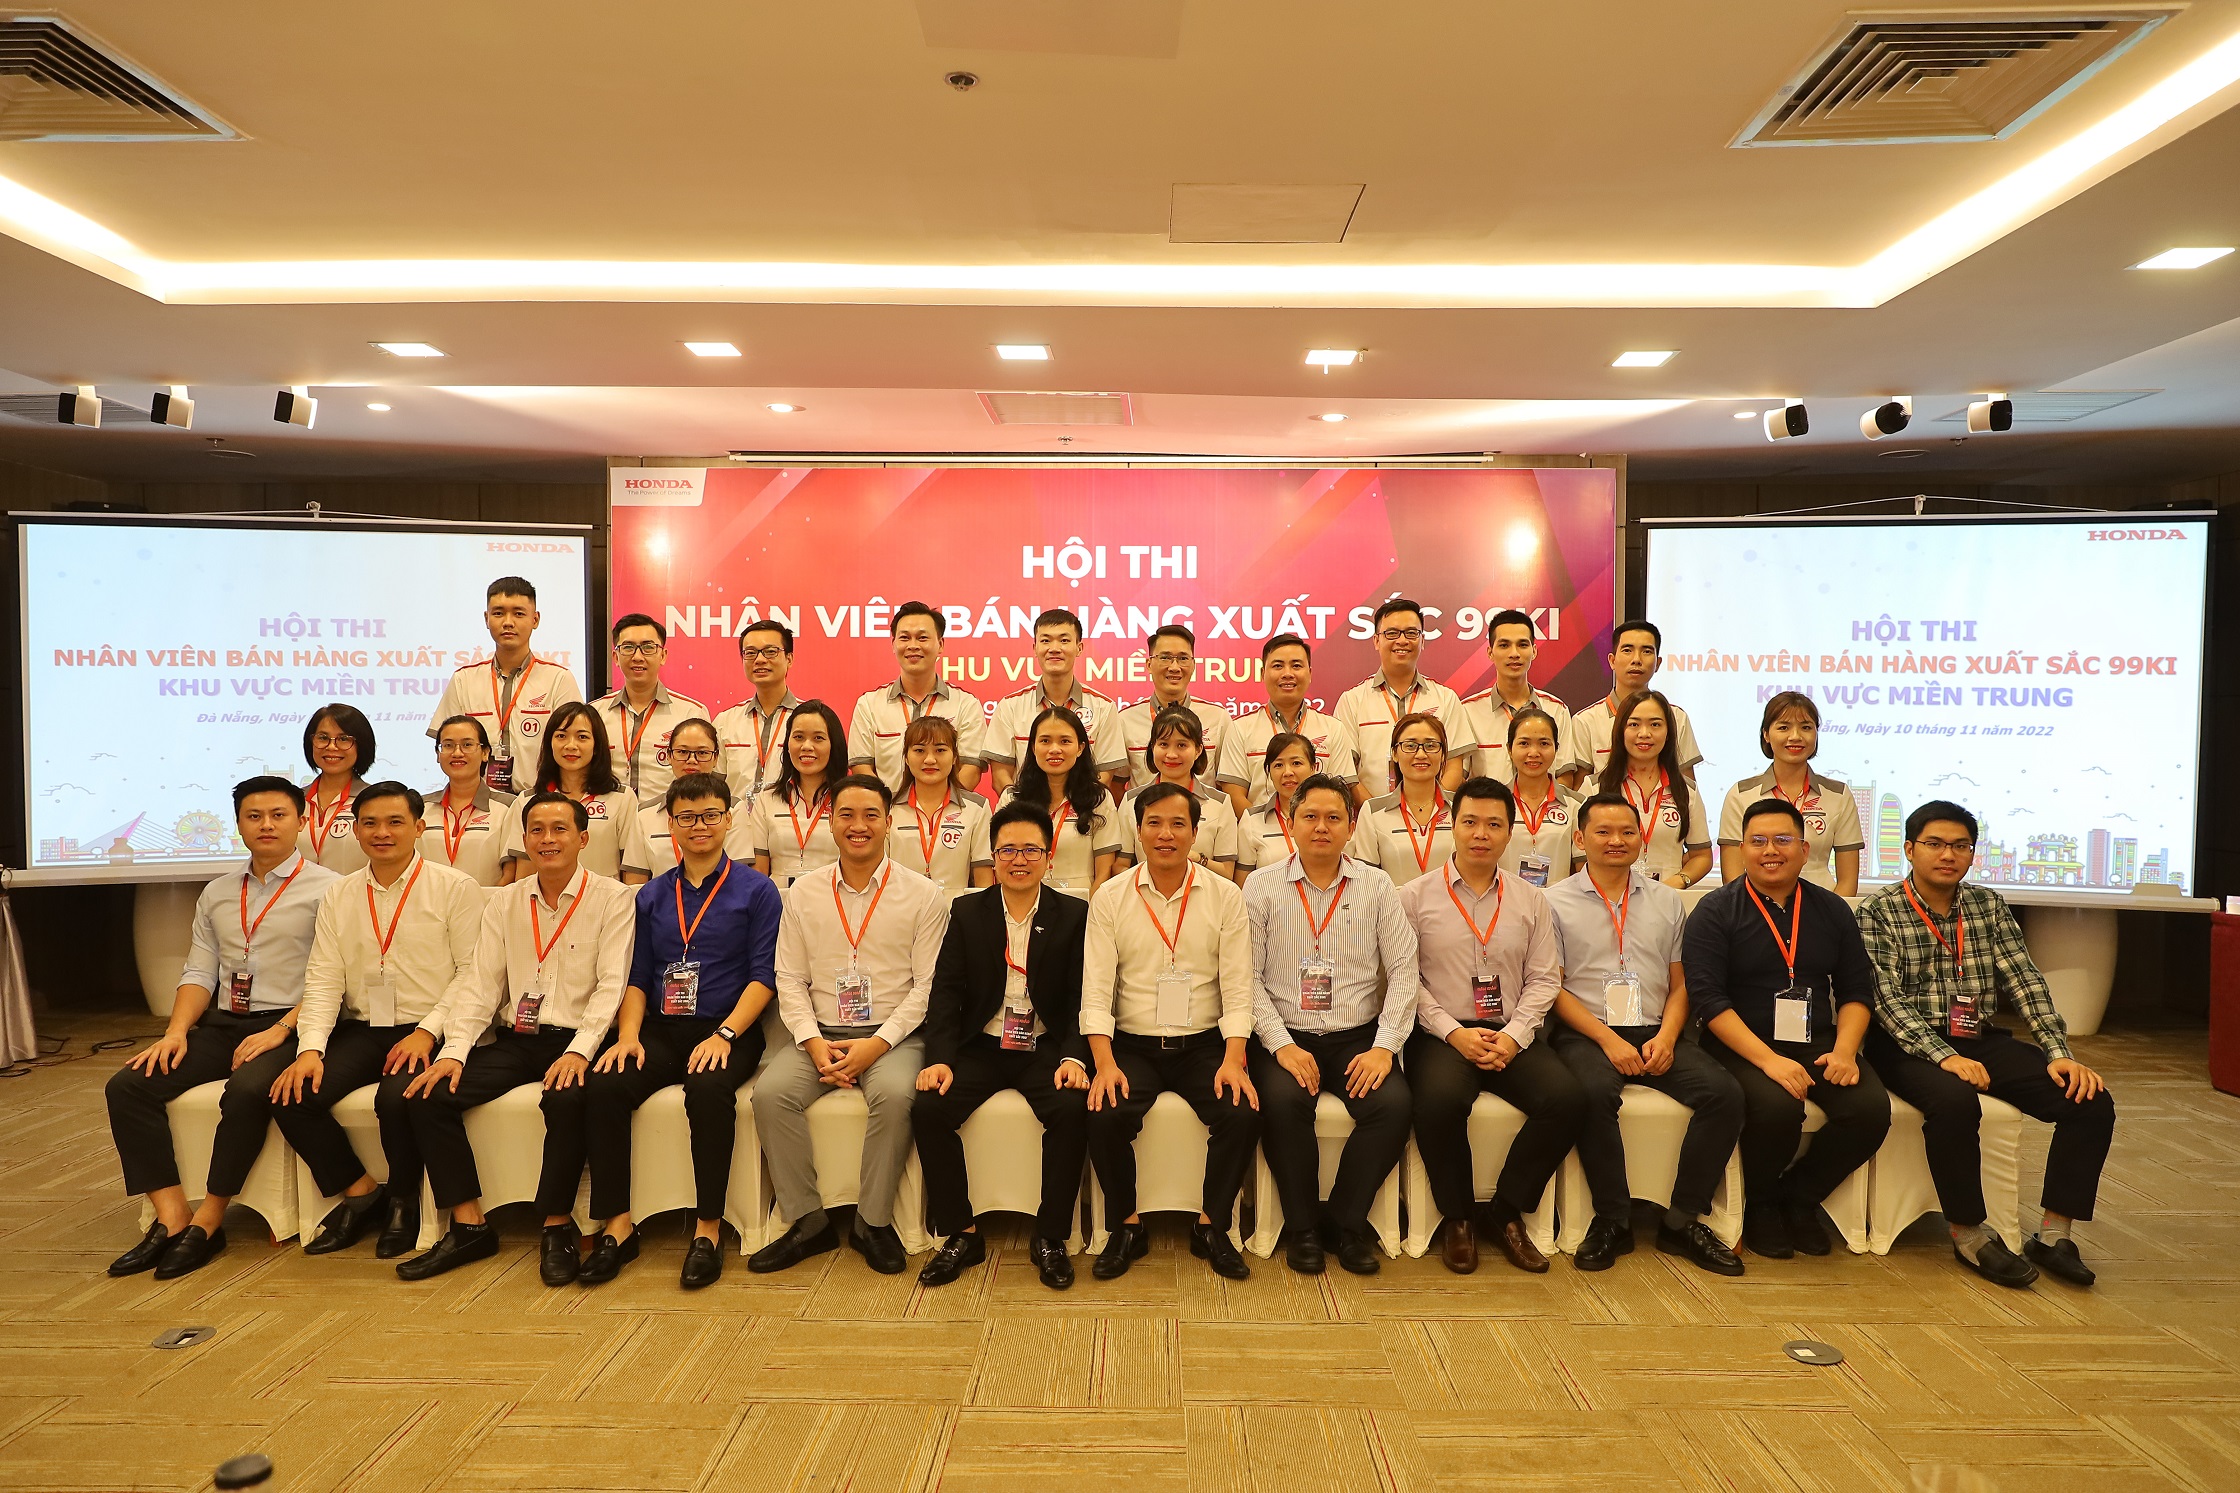 Sôi động vòng thi khu vực hội thi “Nhân viên Bán hàng xuất sắc 2022” của Honda Việt Nam img-7411.JPG